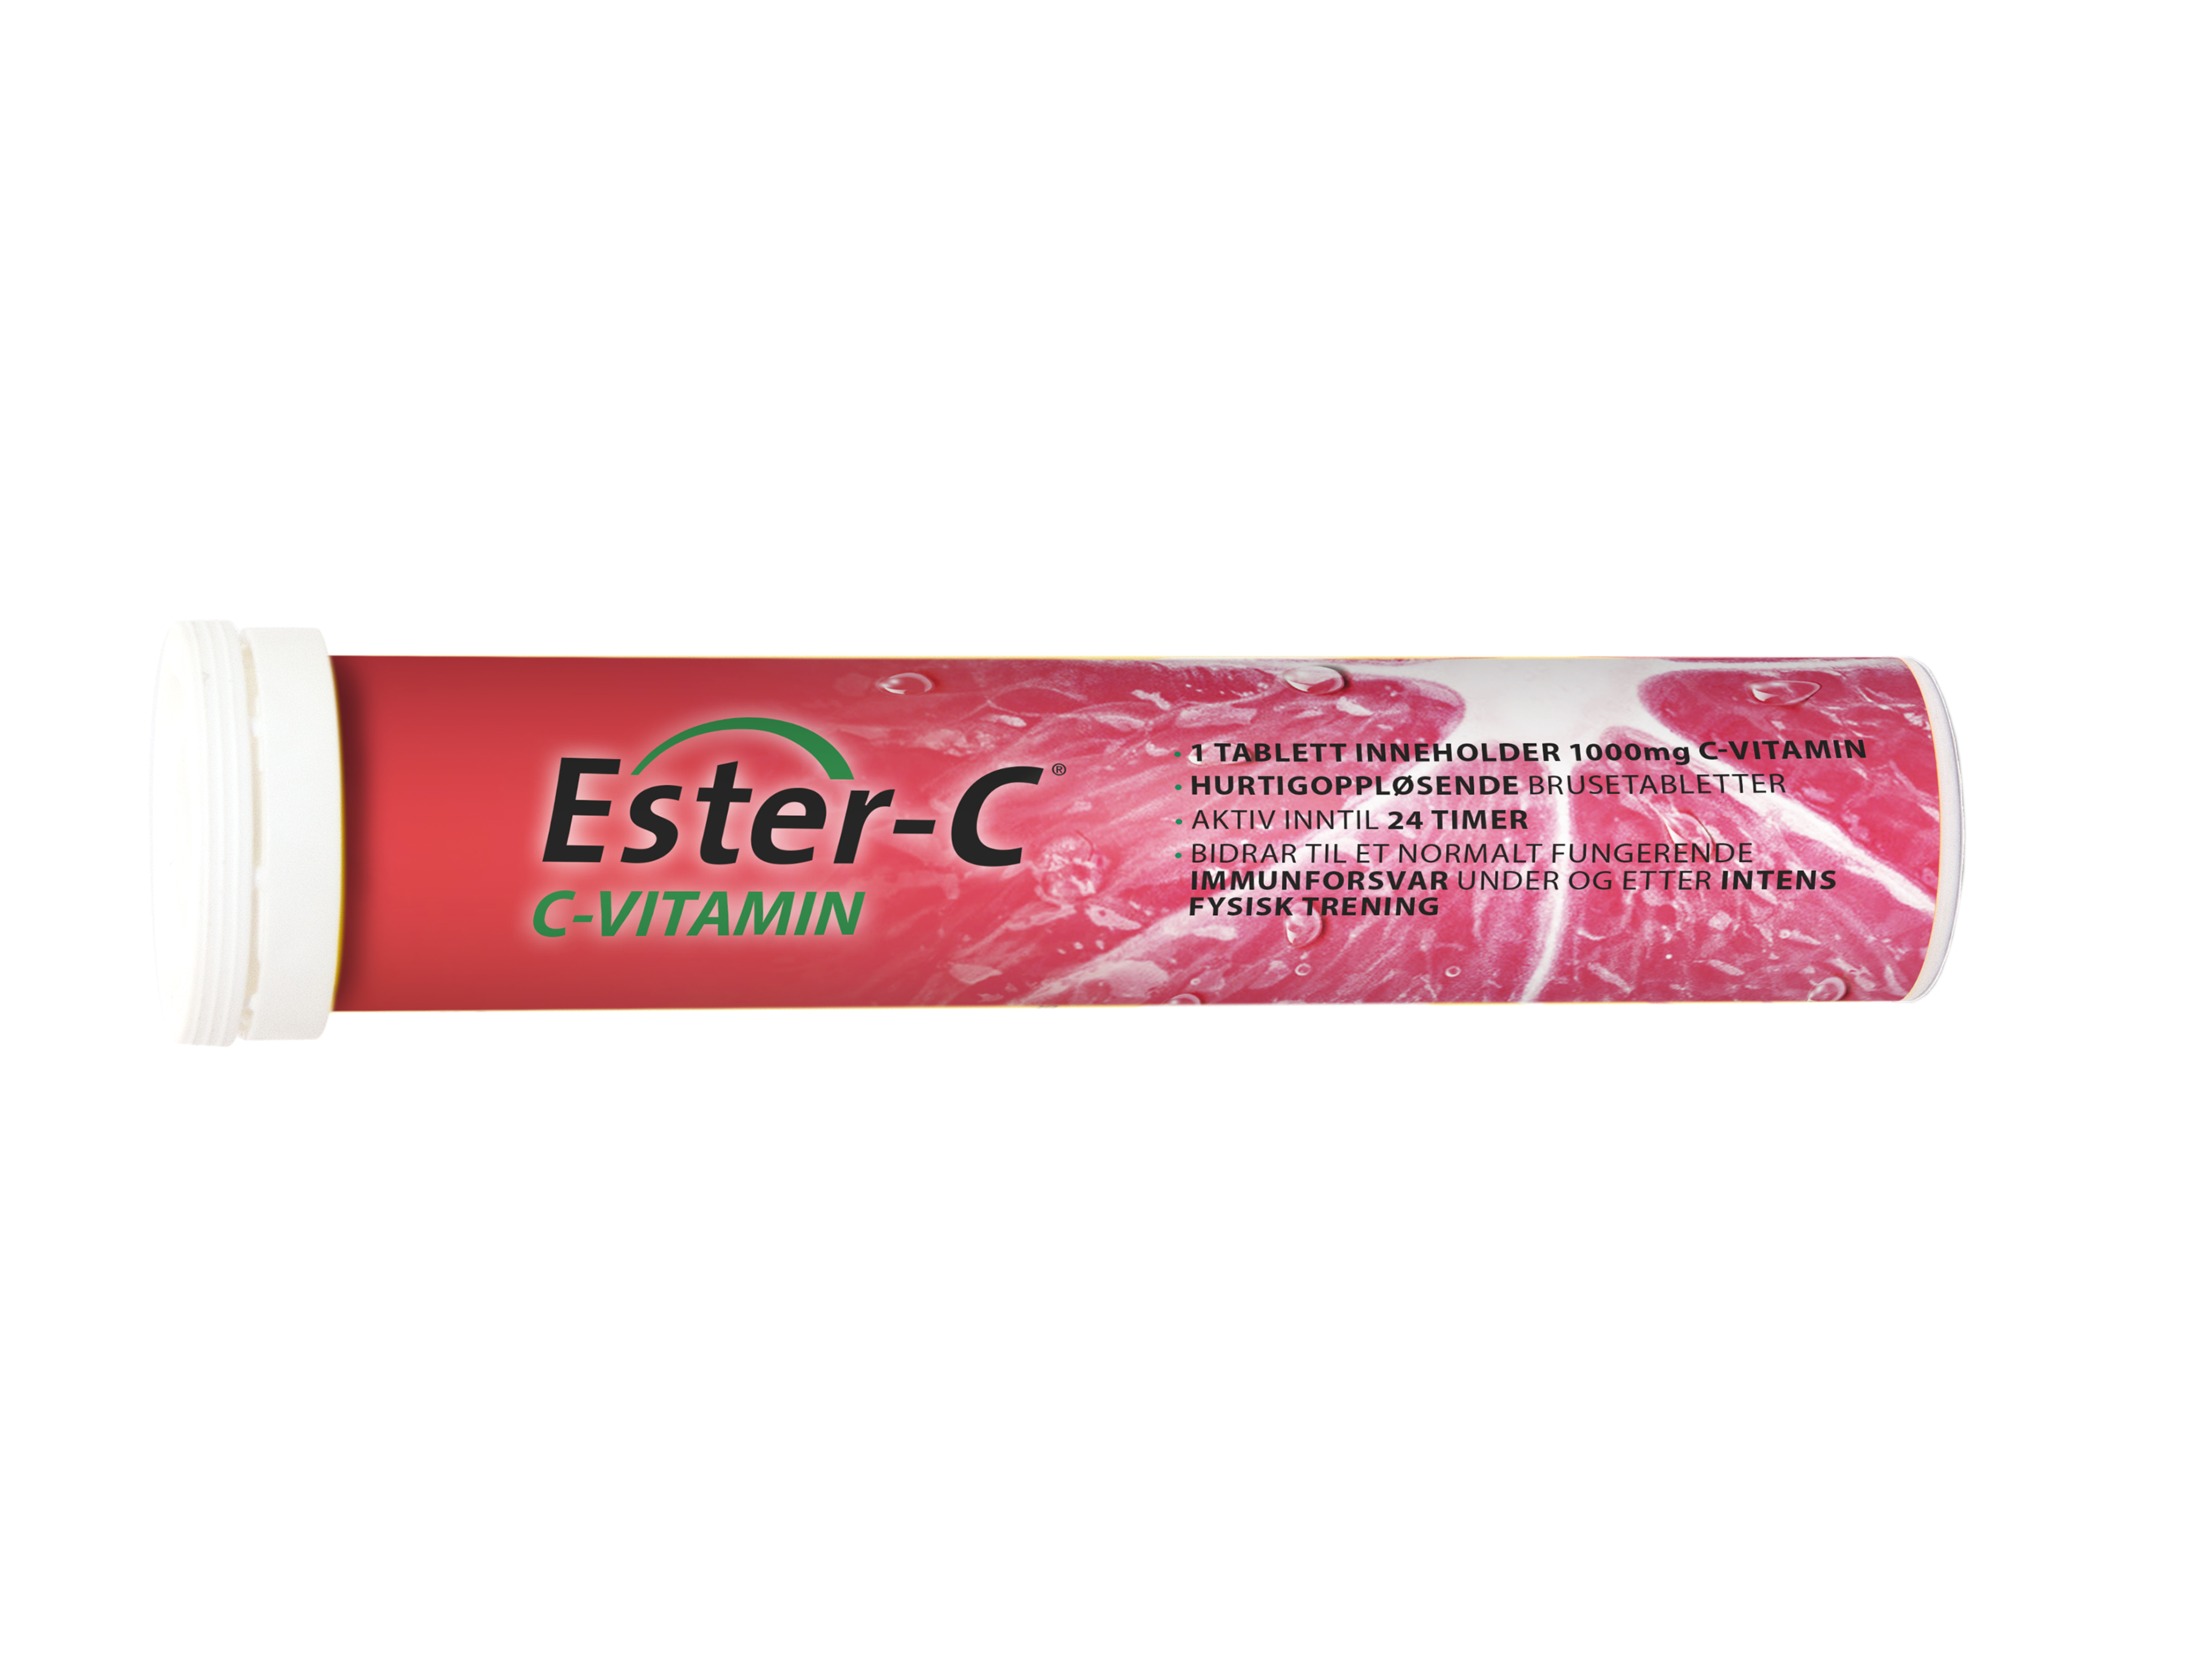 Ester-C C-vitamin 1000 mg, 20 brusetabletter